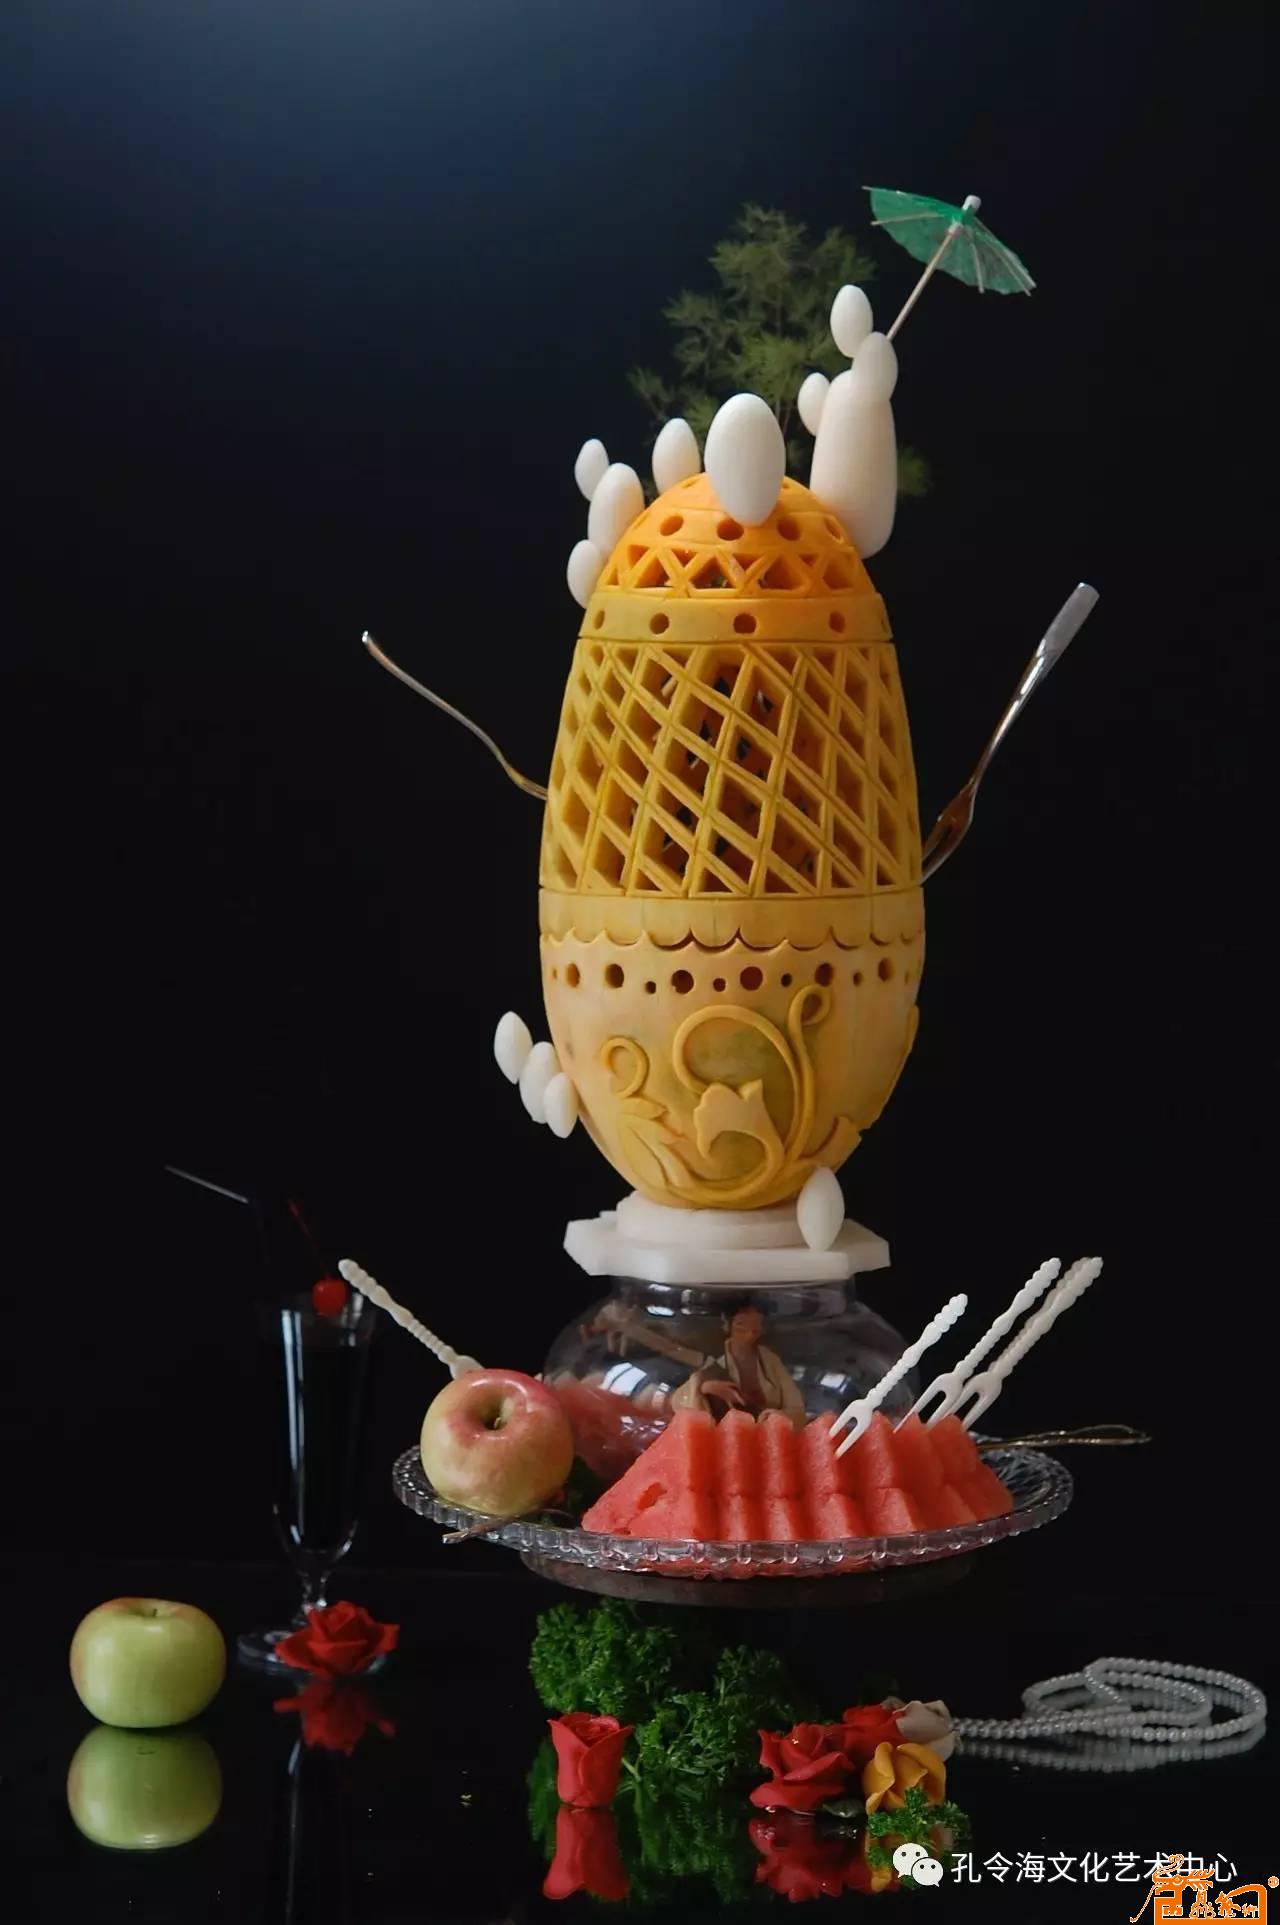 食品雕刻器皿作品- 《蒸蒸日上》  原料：南瓜、萝卜